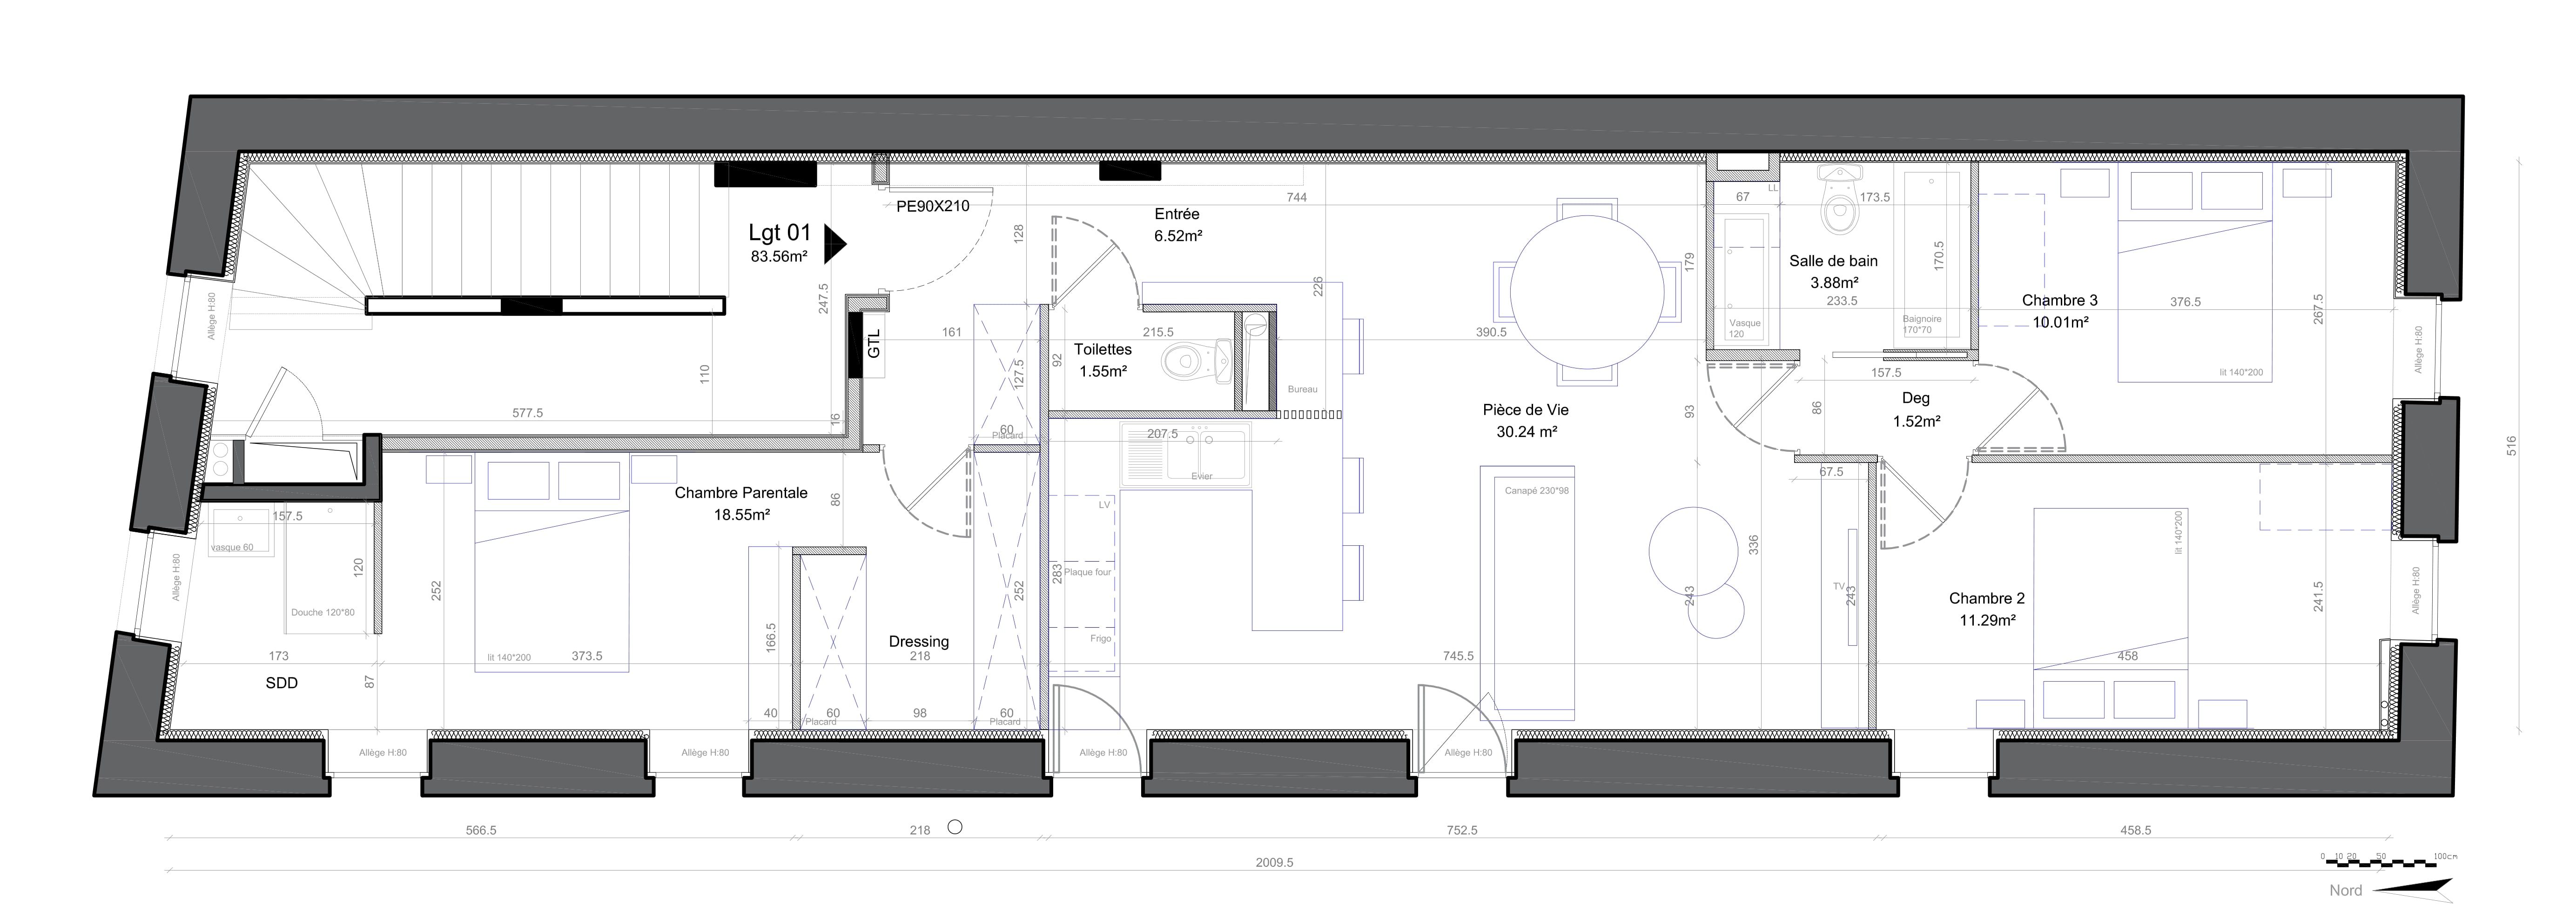 Appartement 3 chambres en longueur 85 m² plan